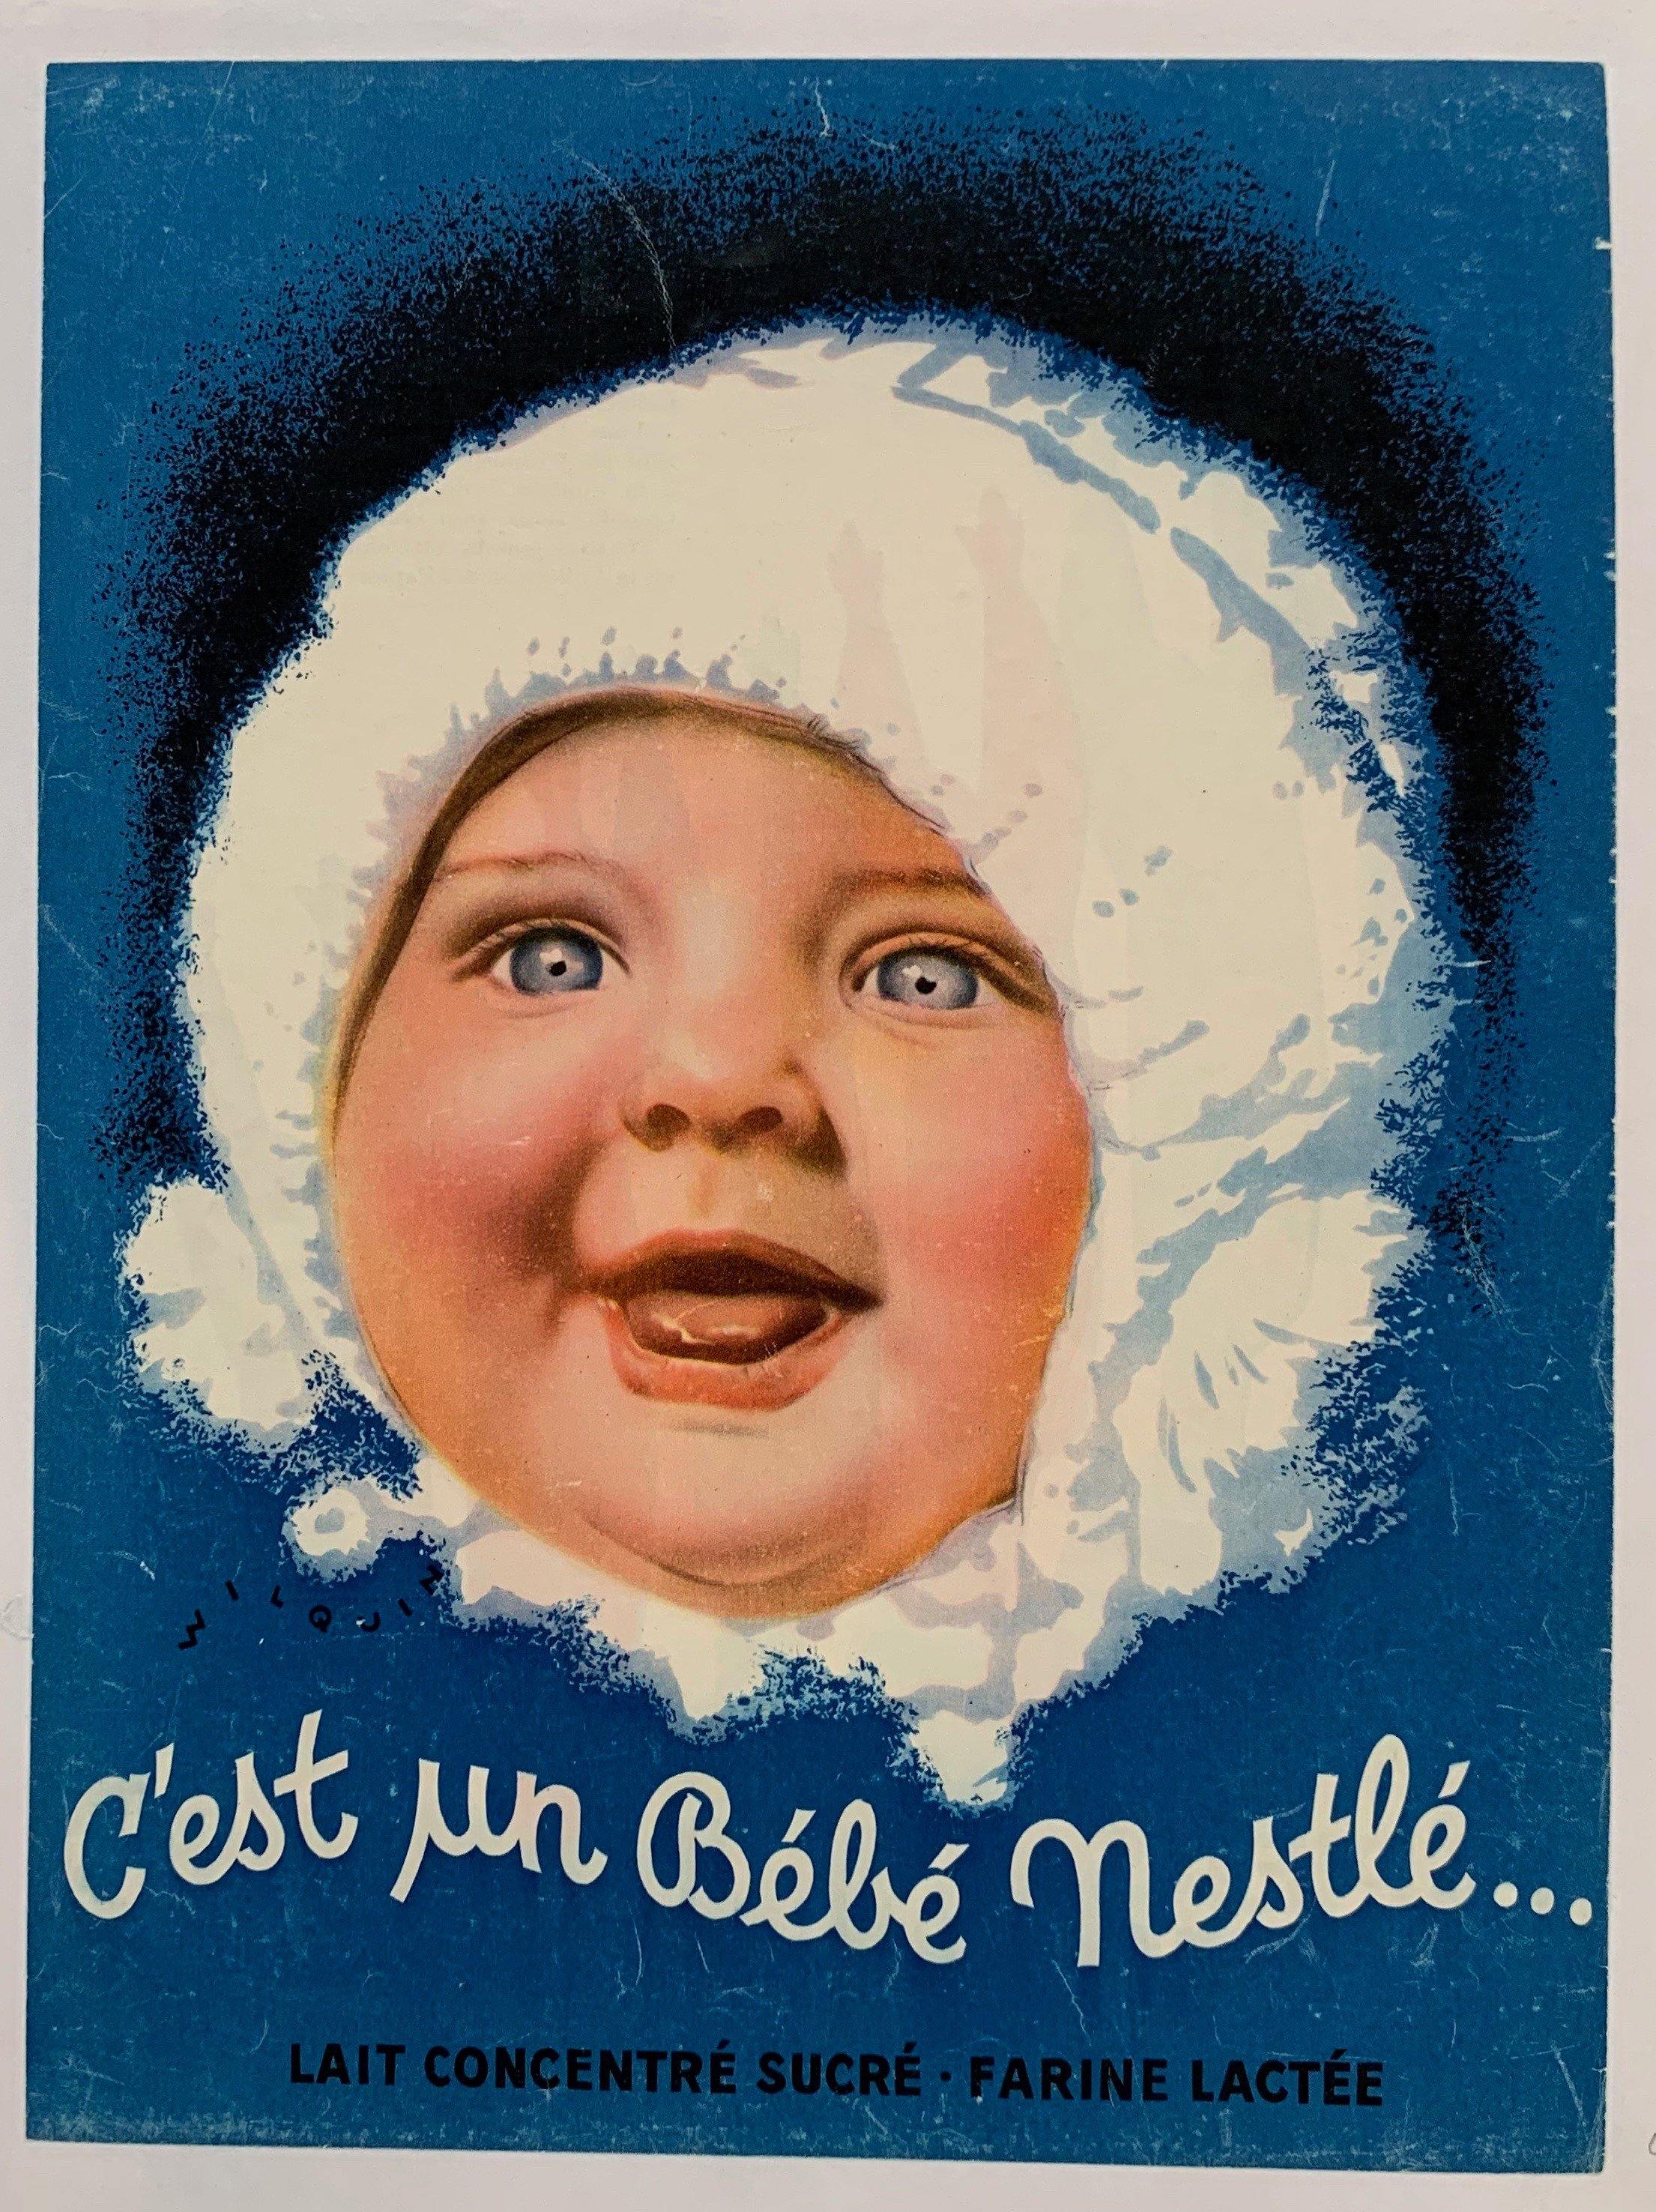 Cest Un Bebe Nestle Lait Concentre Sucre Farine Lactee – Poster Museum